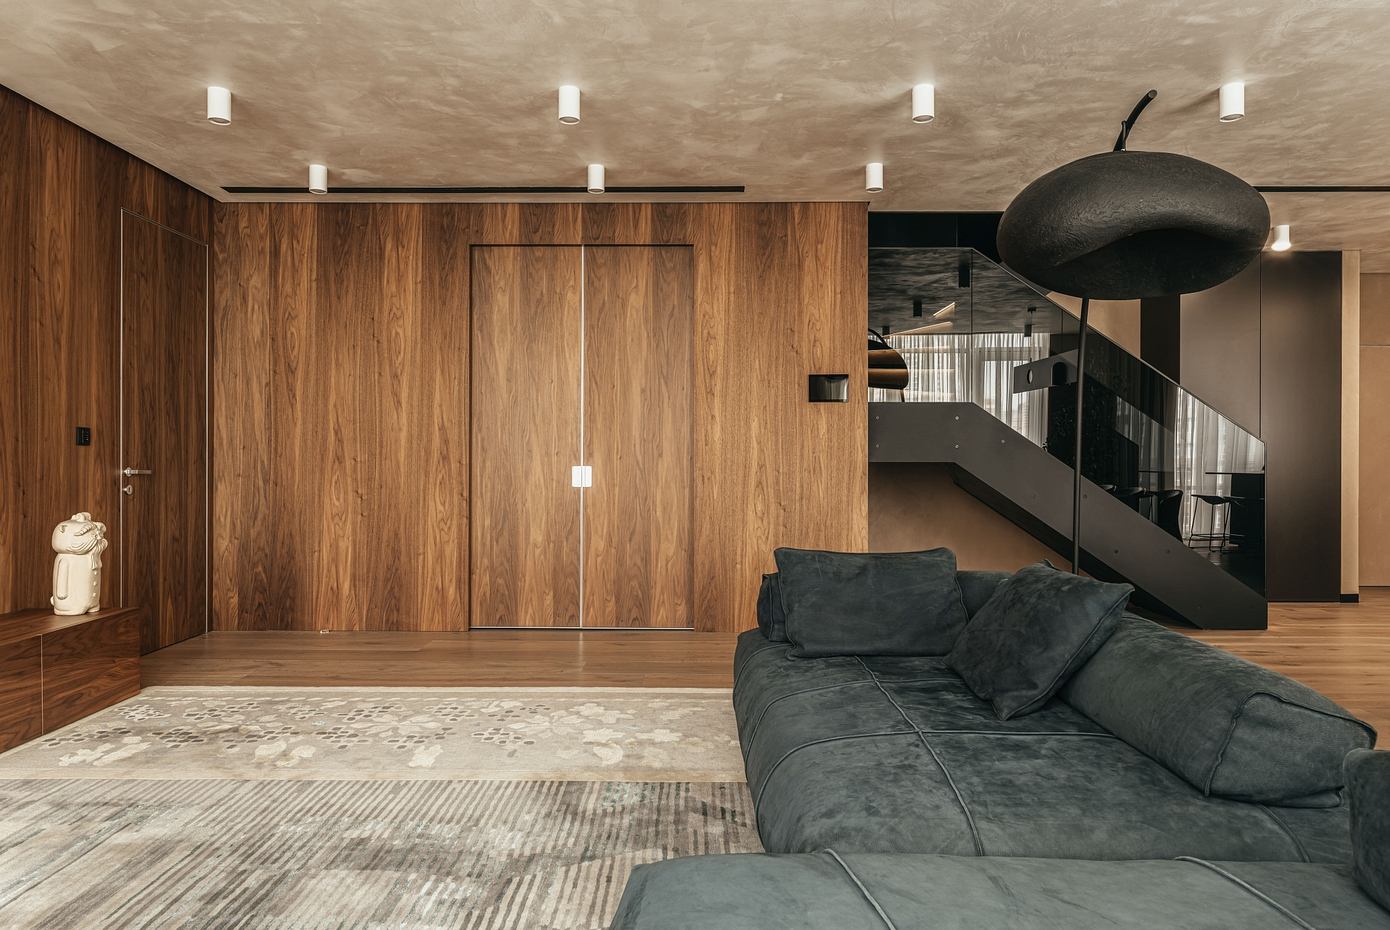 Farby Apartment: Eclectic Ukrainian Interior by MAKHNO Studio